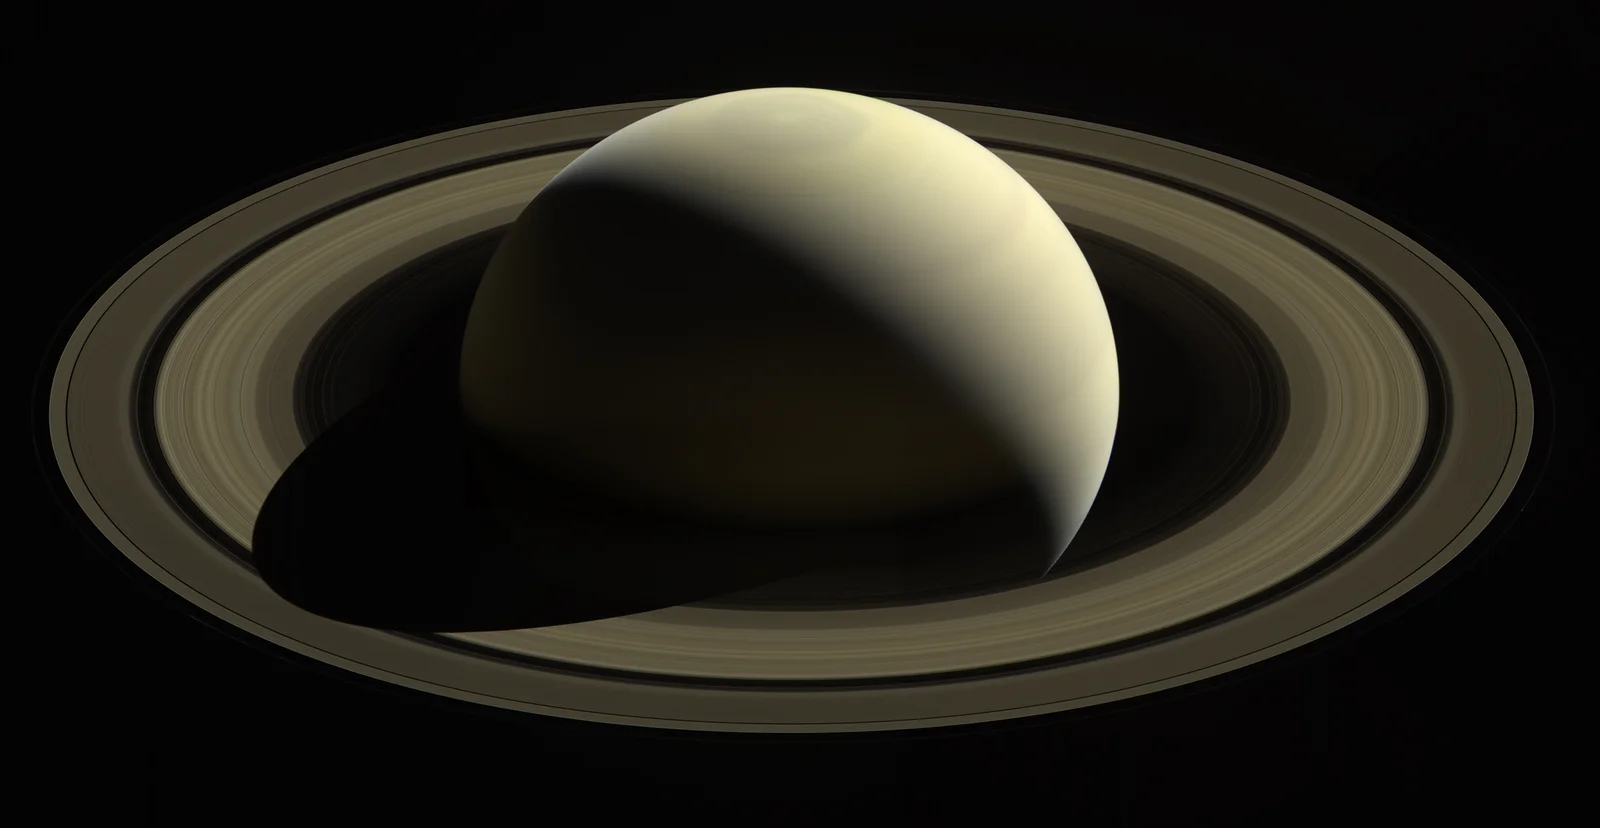 Κρόνος (Saturn) - Εικόνα: NASA/JPL-Caltech/Space Science Institute